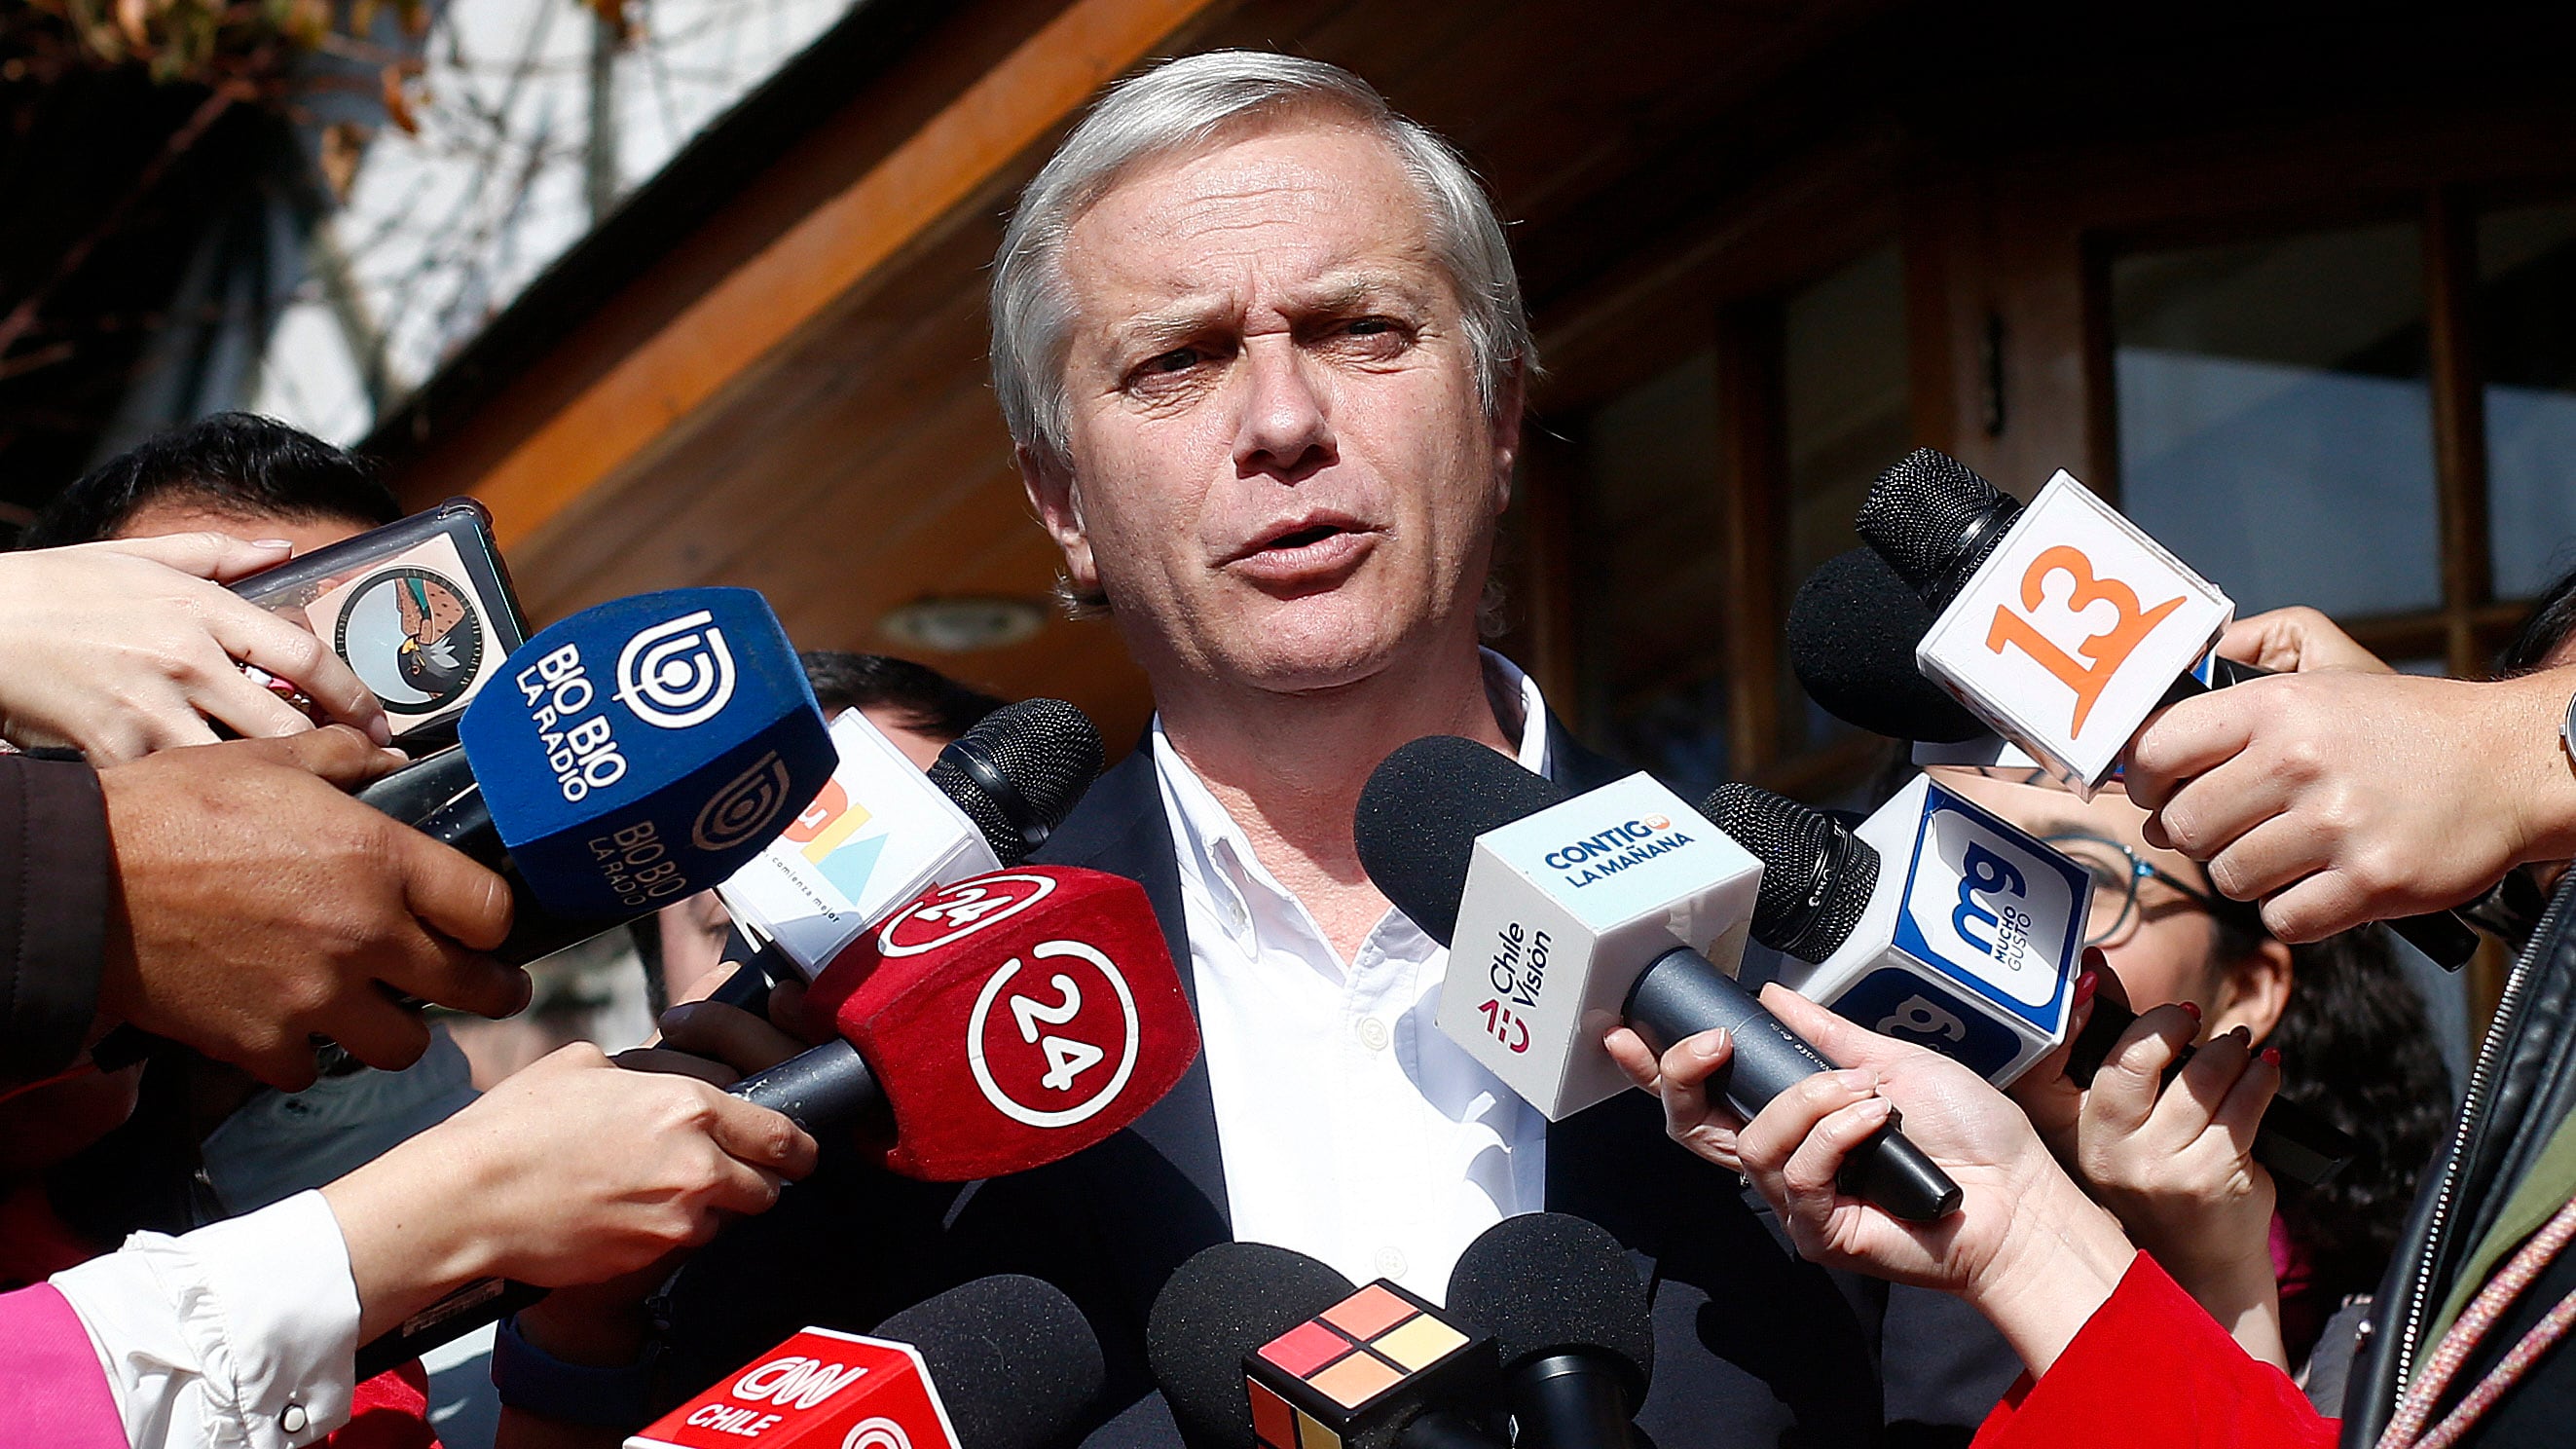 J.A. Kast lidera la mención espontánea en una elección presidencial. / Javier Salvo/ Aton Chile